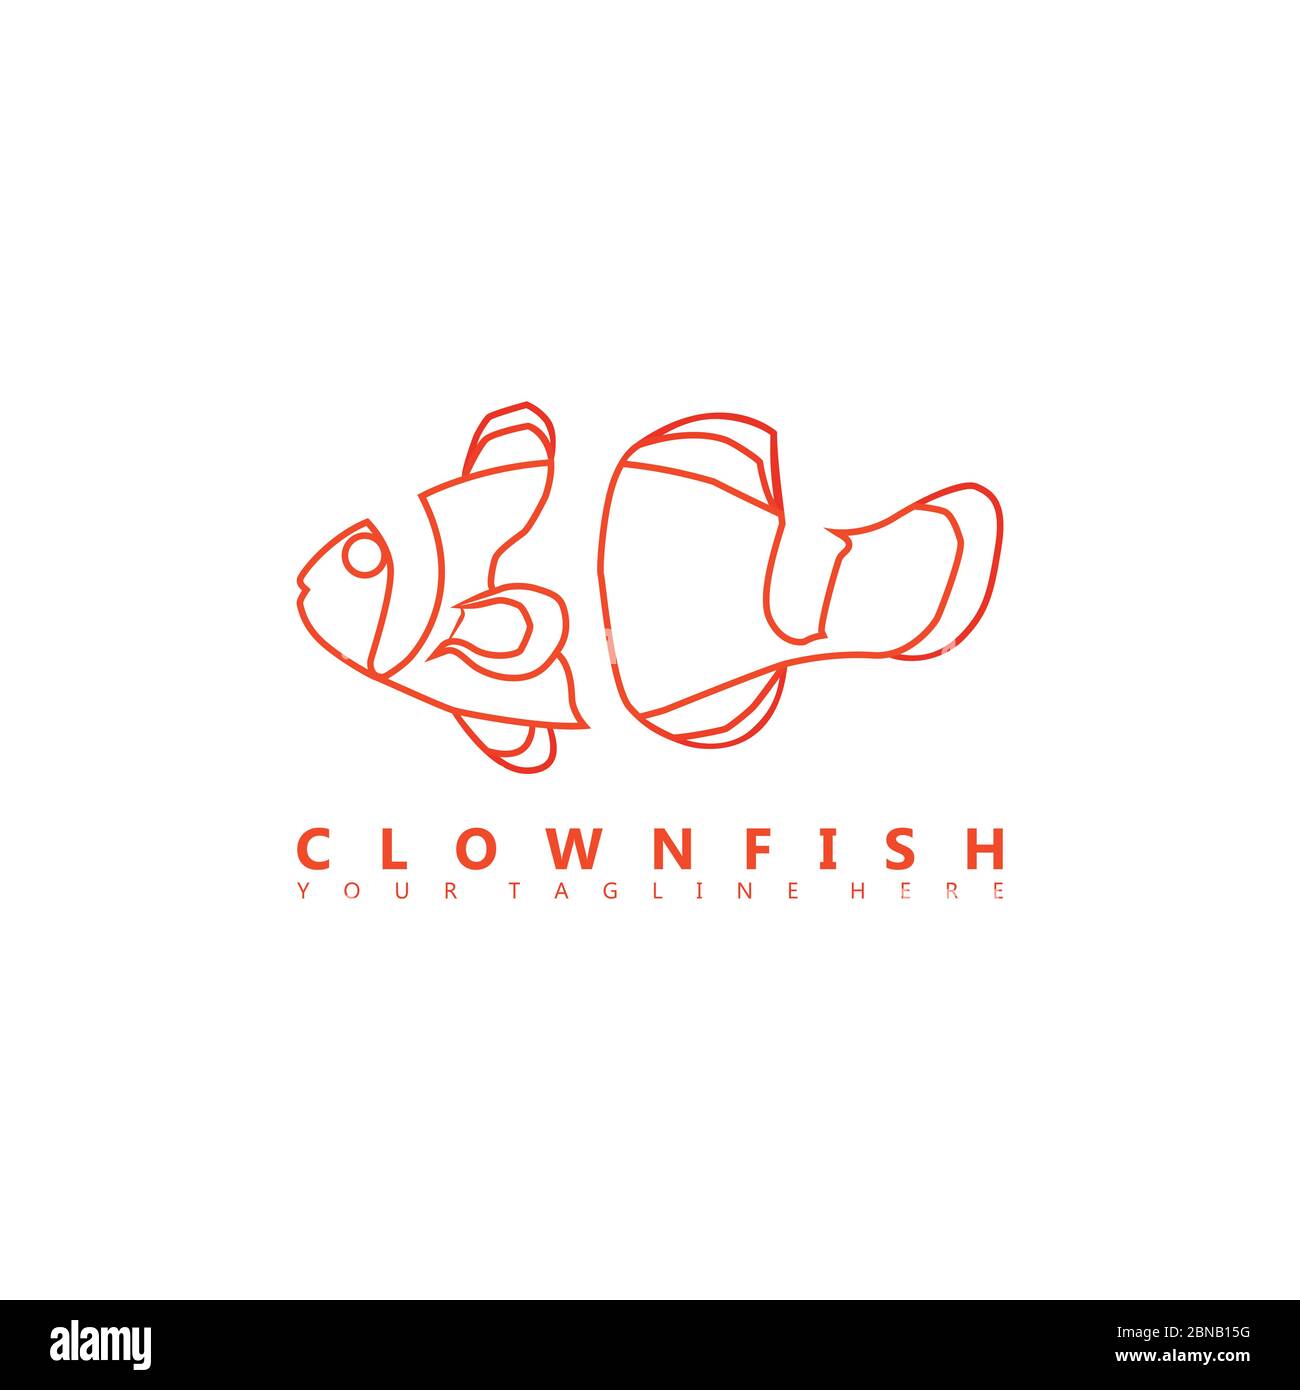 Questa è un'immagine del logo di clownfish che utilizza uno stile di spazio negativo. Questo logo è adatto alle aziende del settore dell'allevamento ornamentale. Illustrazione Vettoriale